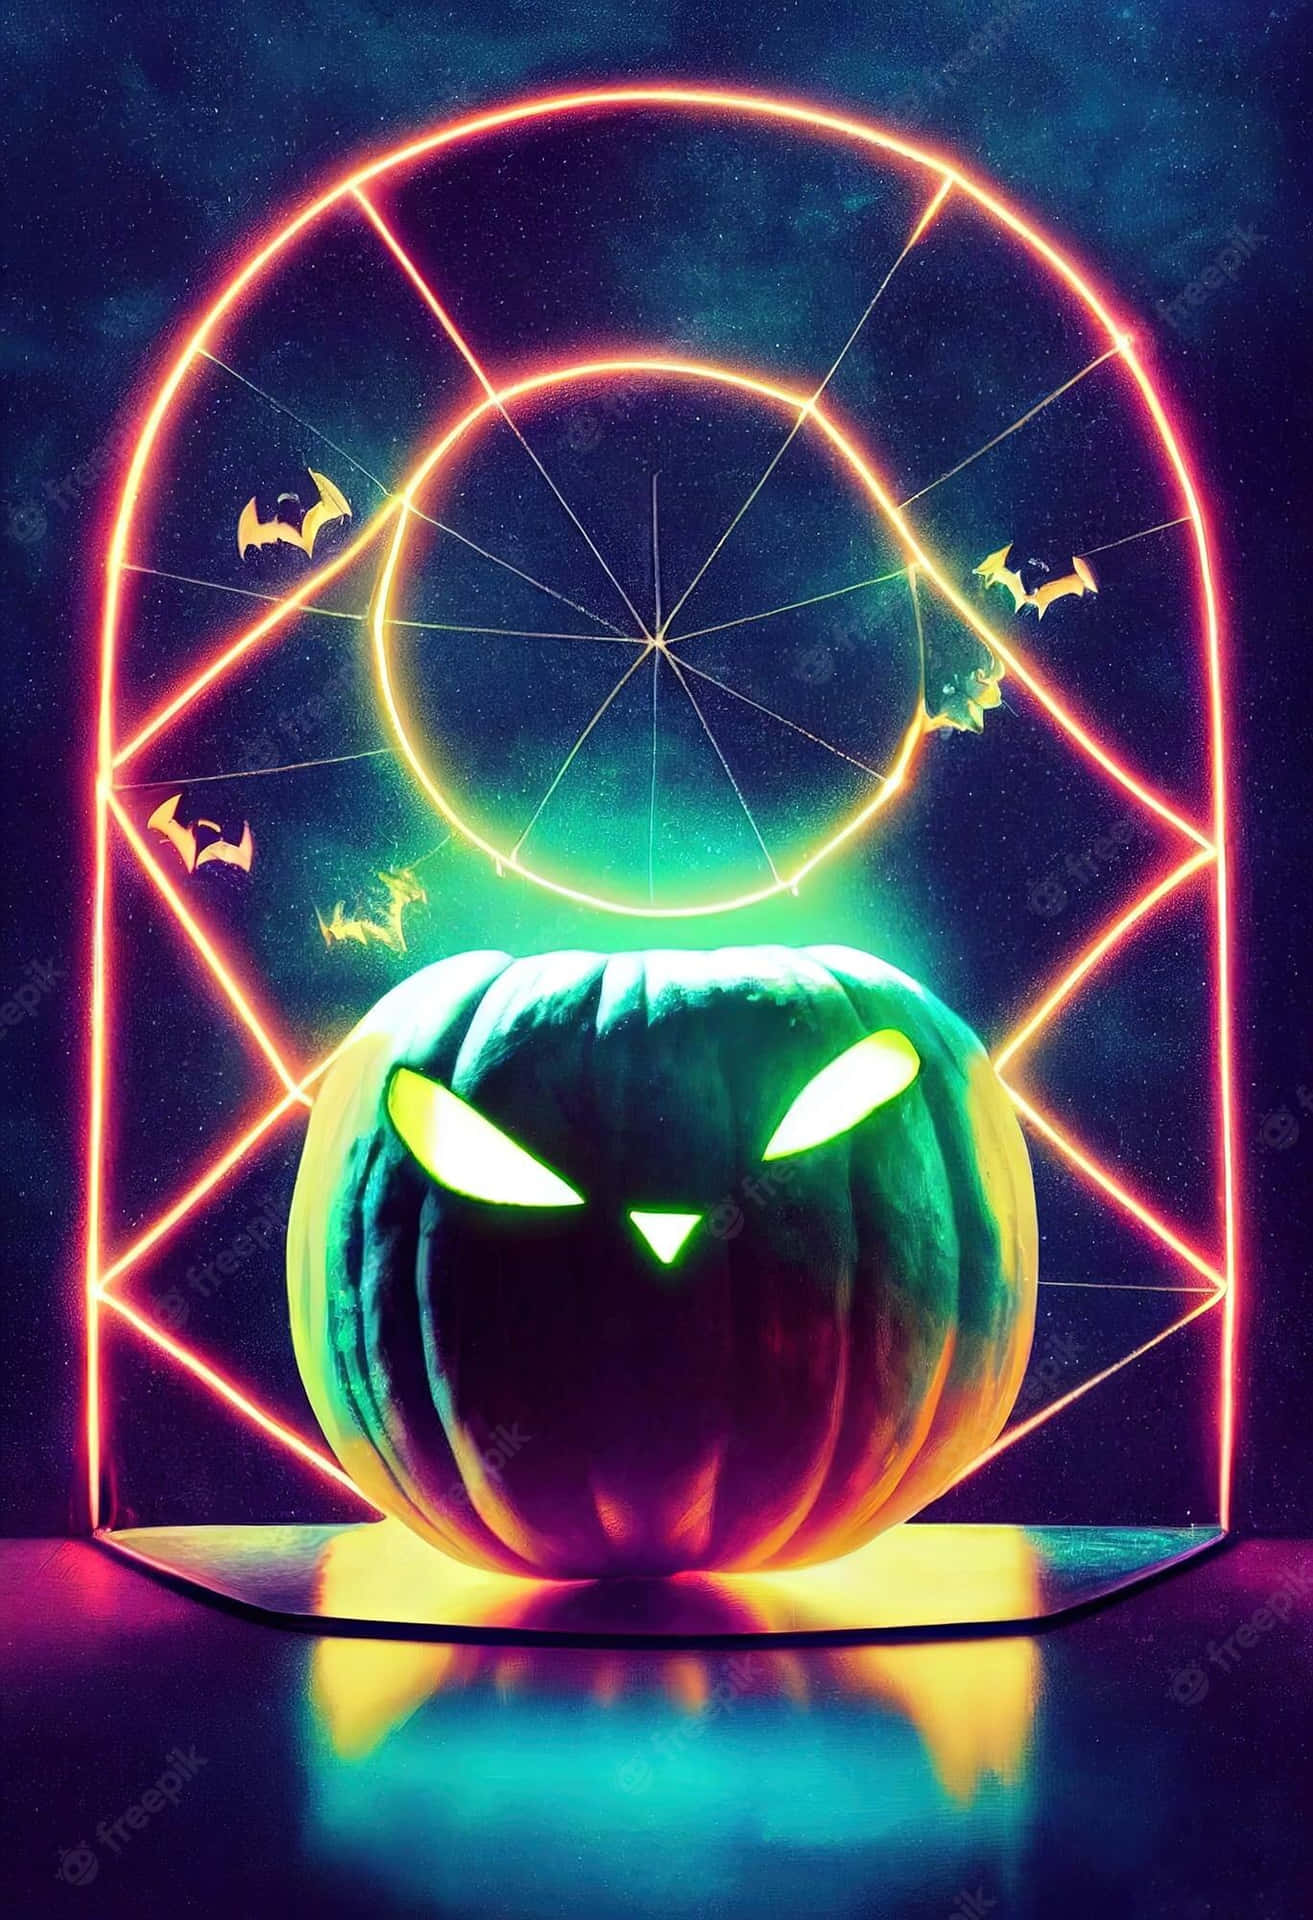 Lys op nat i neon til halloween! Wallpaper